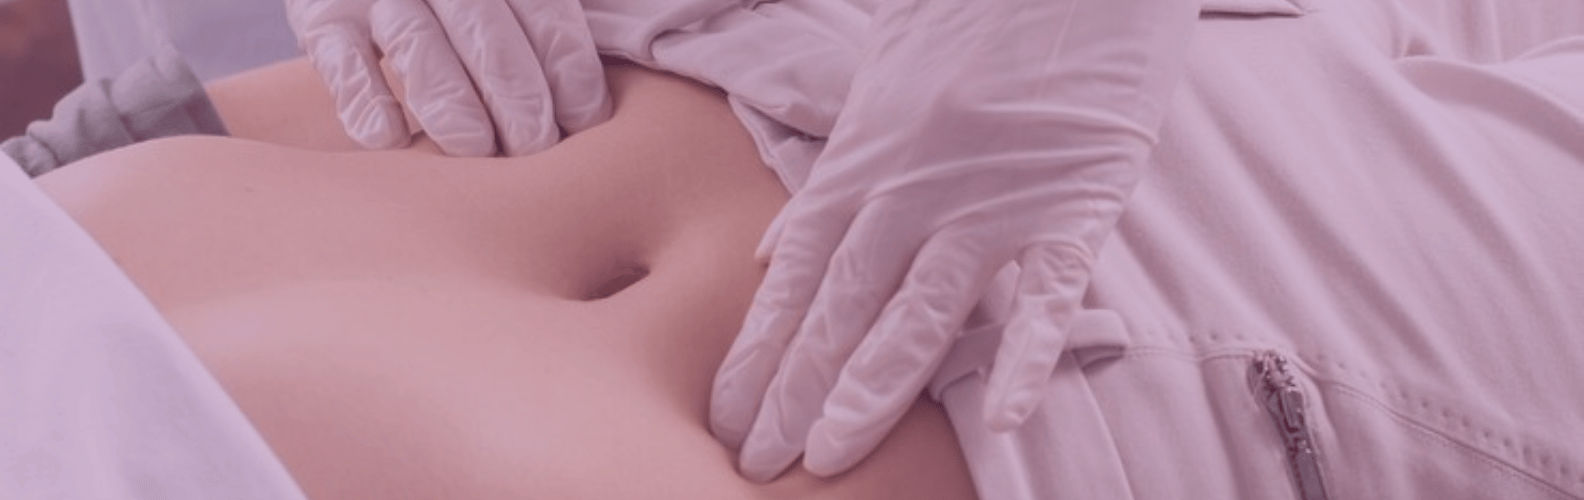 Pruebas diagnósticas de fertilidad para mujer-Cultivo endometrial